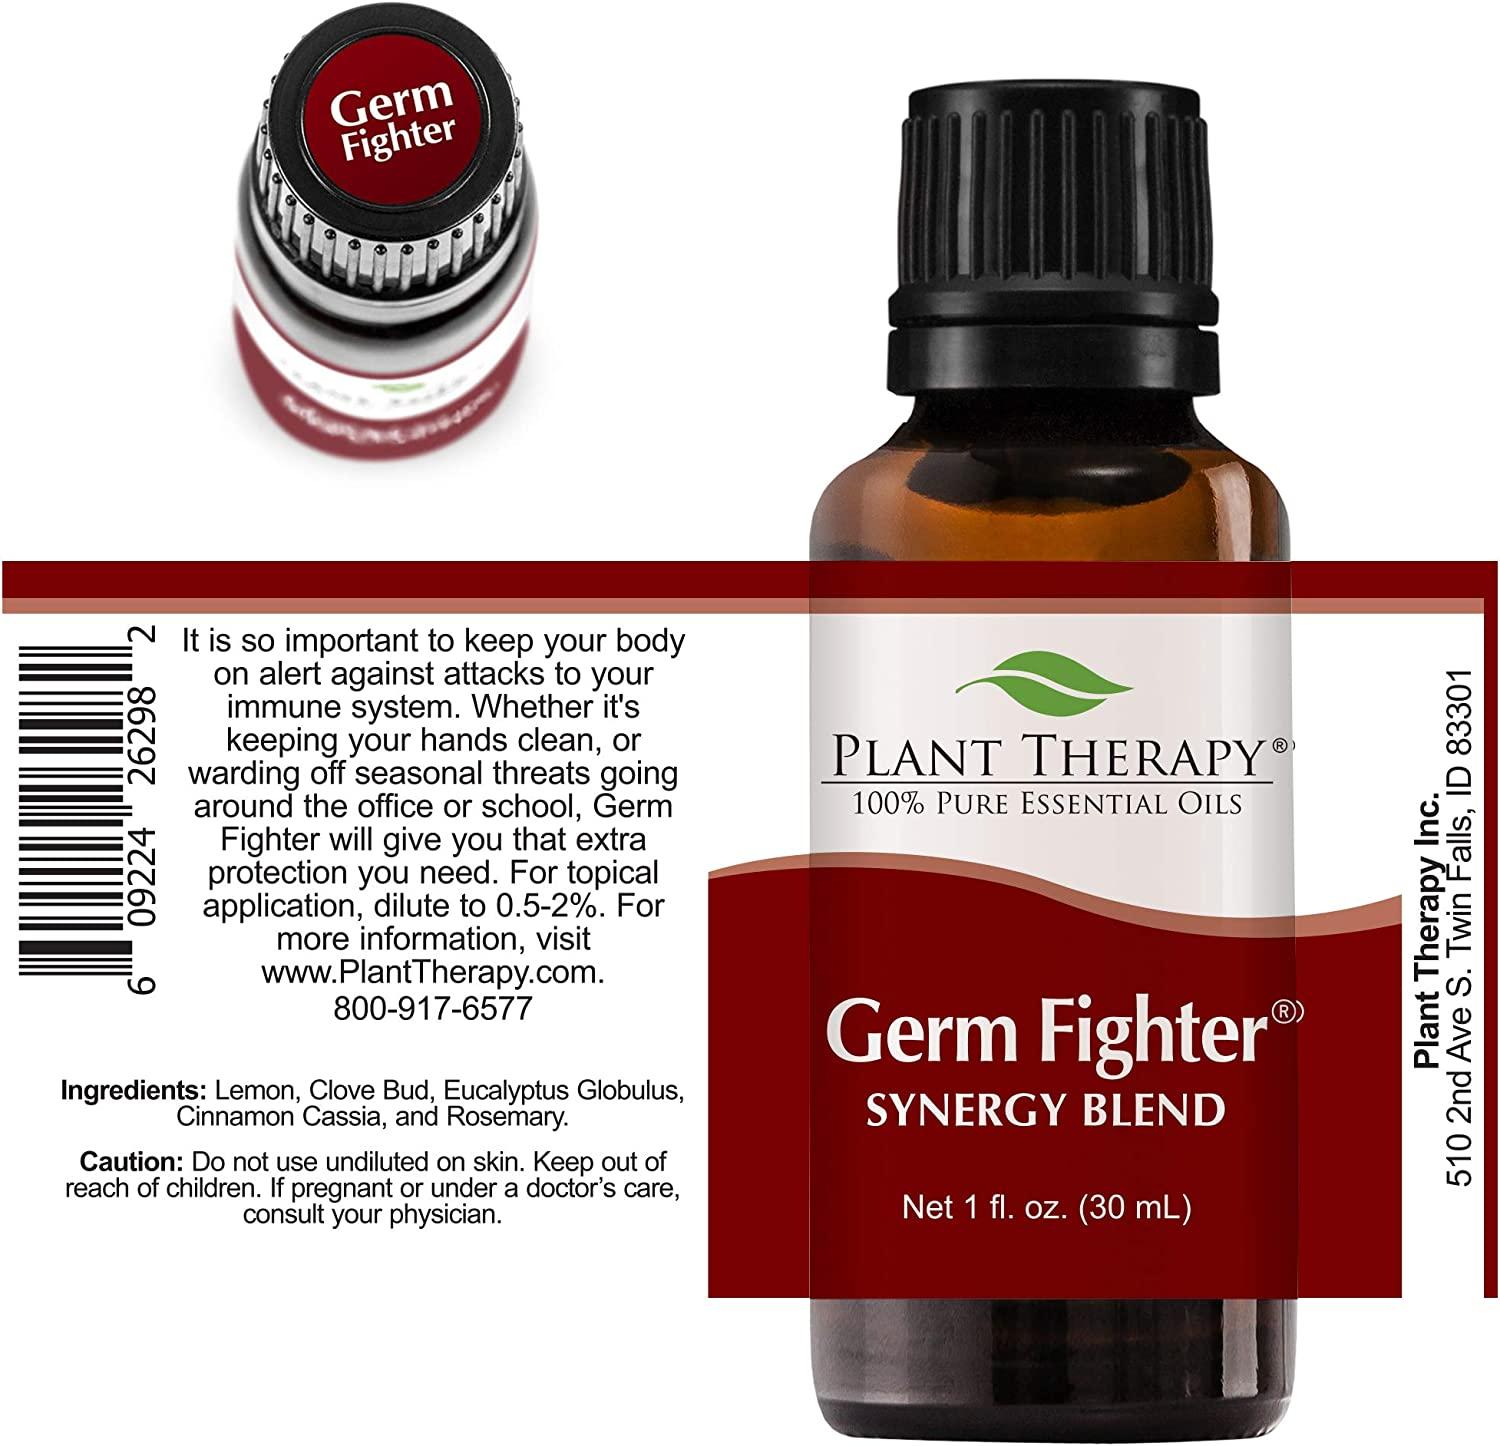 Plant Therapy Cinnamon Cassia Essential Oil 10 ml (1/3 oz) 100% Pure, Undiluted, Therapeutic Grade